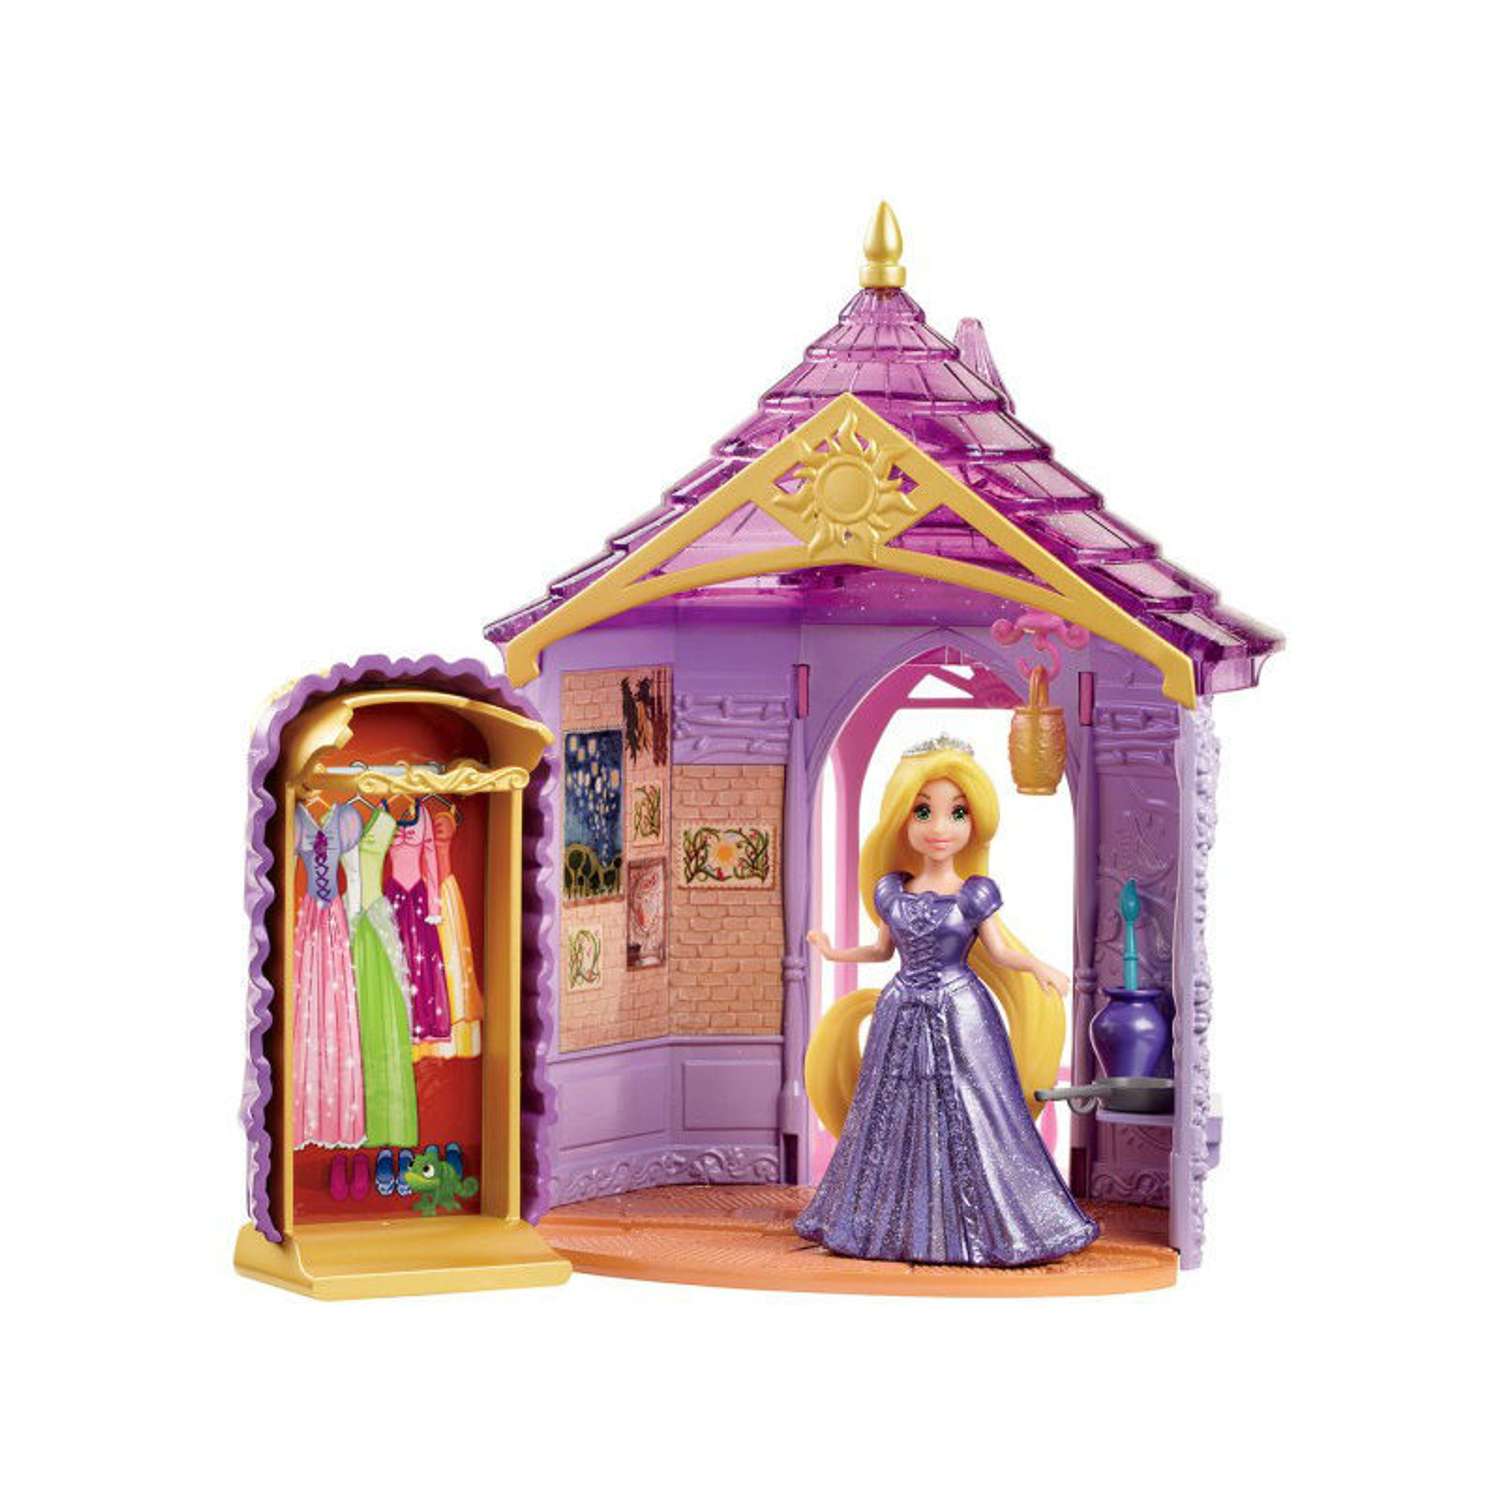 Комната Принцессы Disney Princess кукла с аксуарами в наборе в ассортименте BDJ97(BDJ98/BDJ99/BDK01) - фото 4